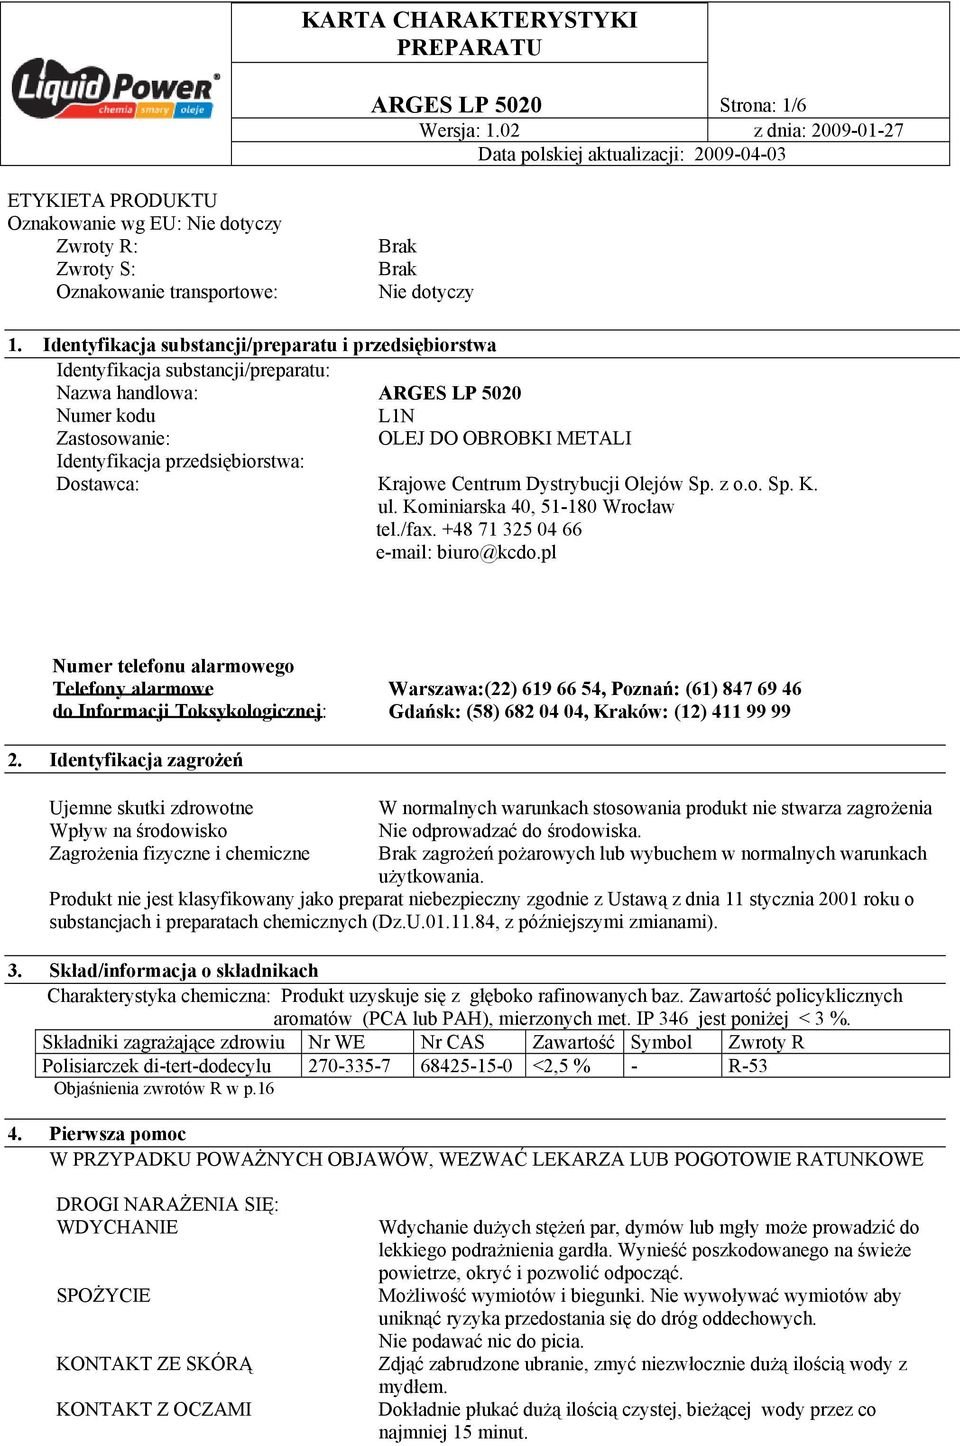 przedsiębiorstwa: Dostawca: Krajowe Centrum Dystrybucji Olejów Sp. z o.o. Sp. K. ul. Kominiarska 40, 51-180 Wrocław tel./fax. +48 71 325 04 66 e-mail: biuro@kcdo.